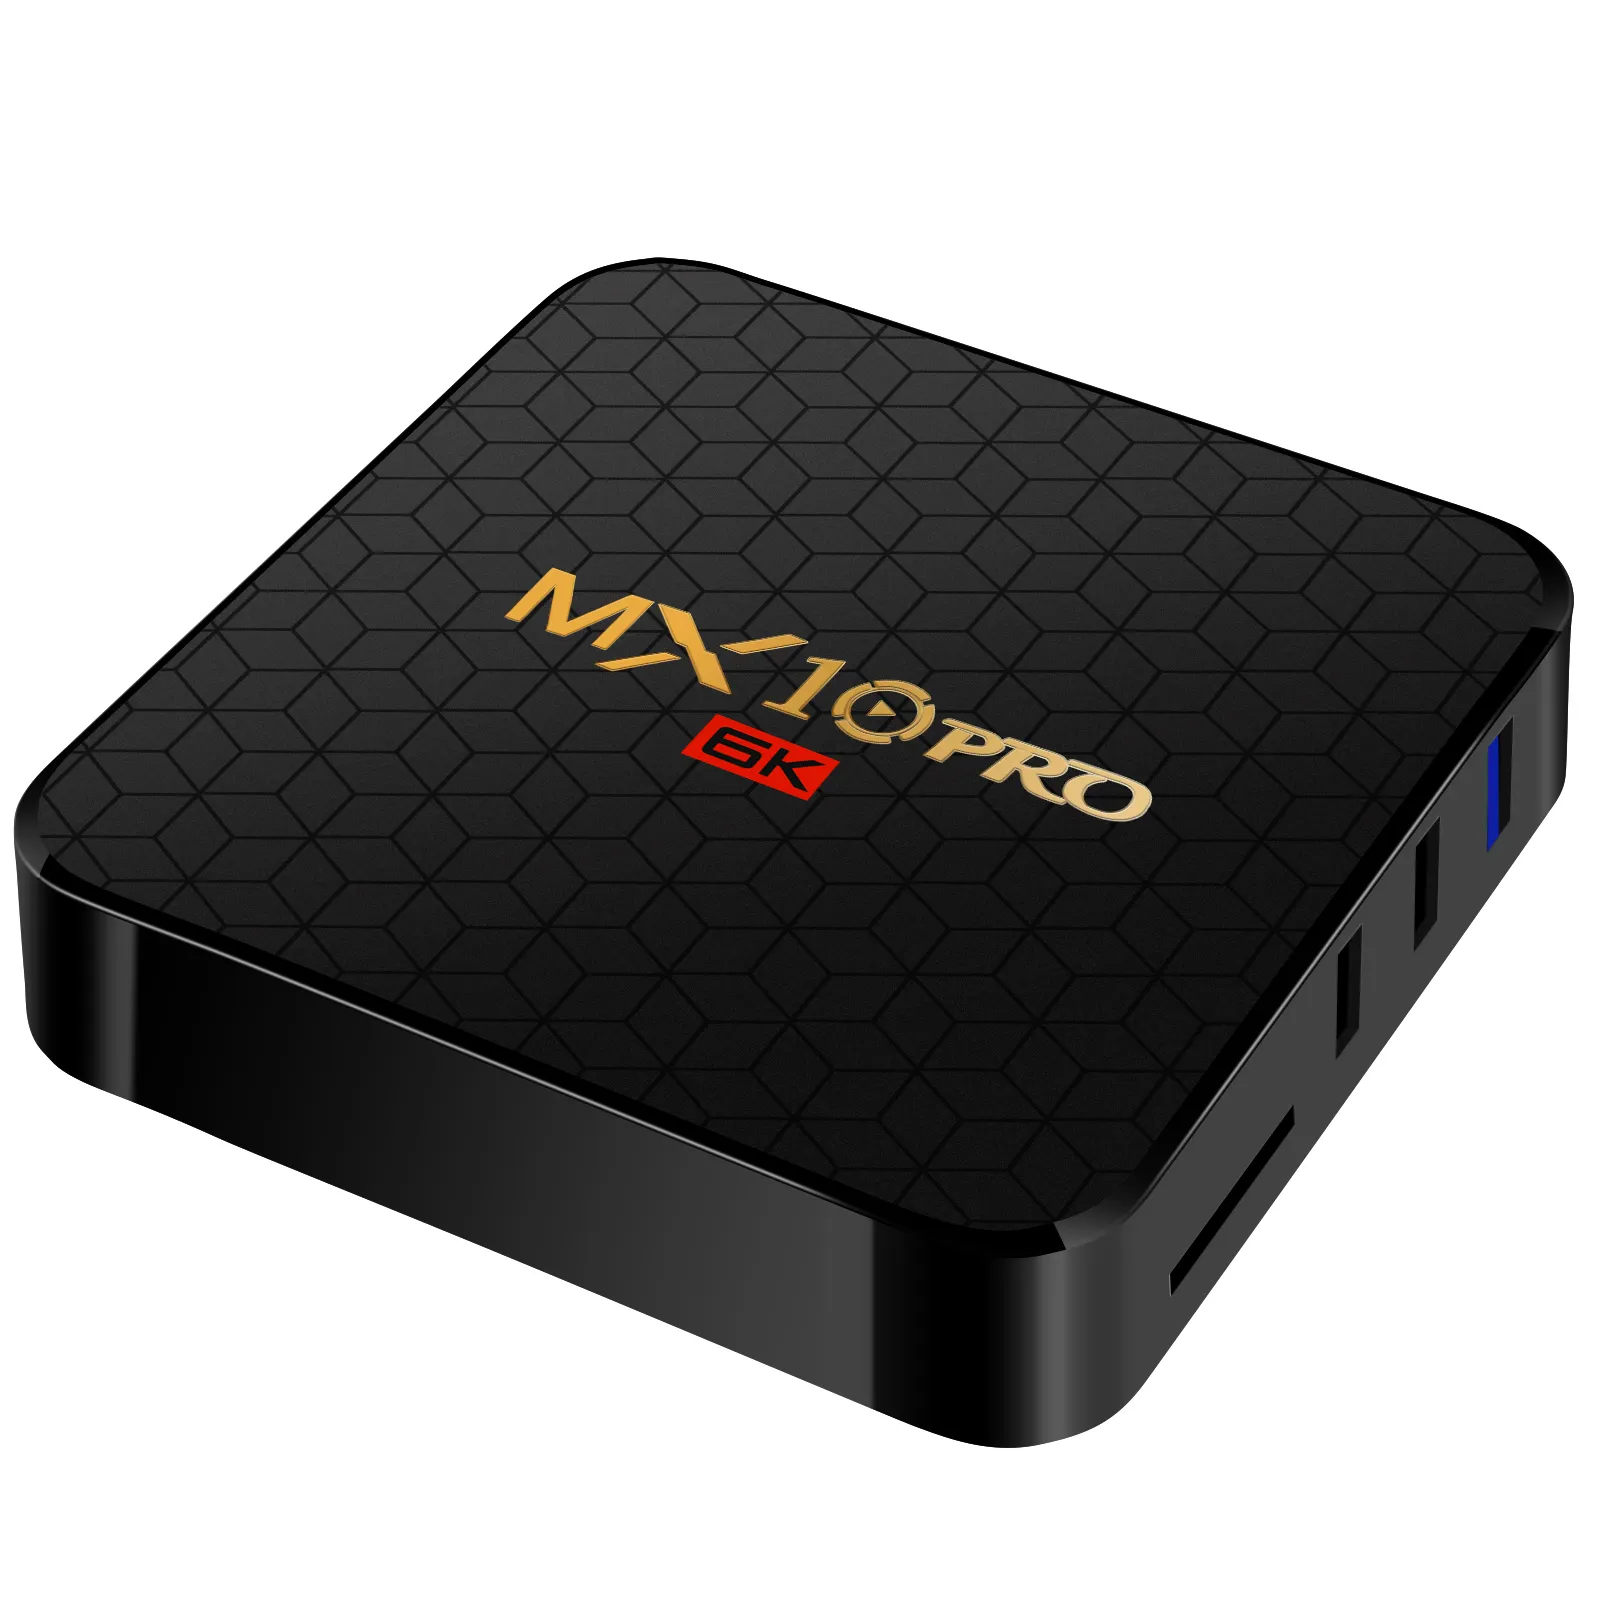 Mx10pro Allwinner H6 चिप टीवी बॉक्स एंड्रॉयड 9.0 ट्रैक्टर-कोर 4GB 32GB टीवी शो धारा-बॉक्स